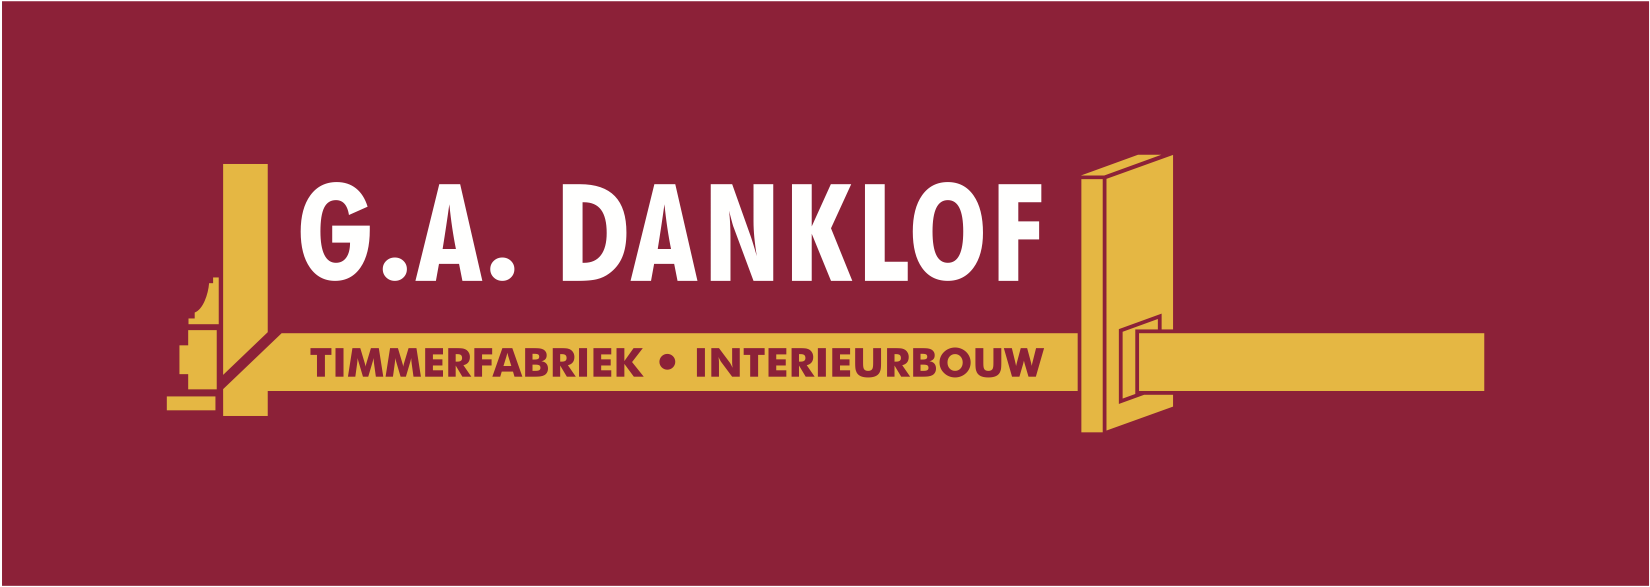 danklof-logo.png